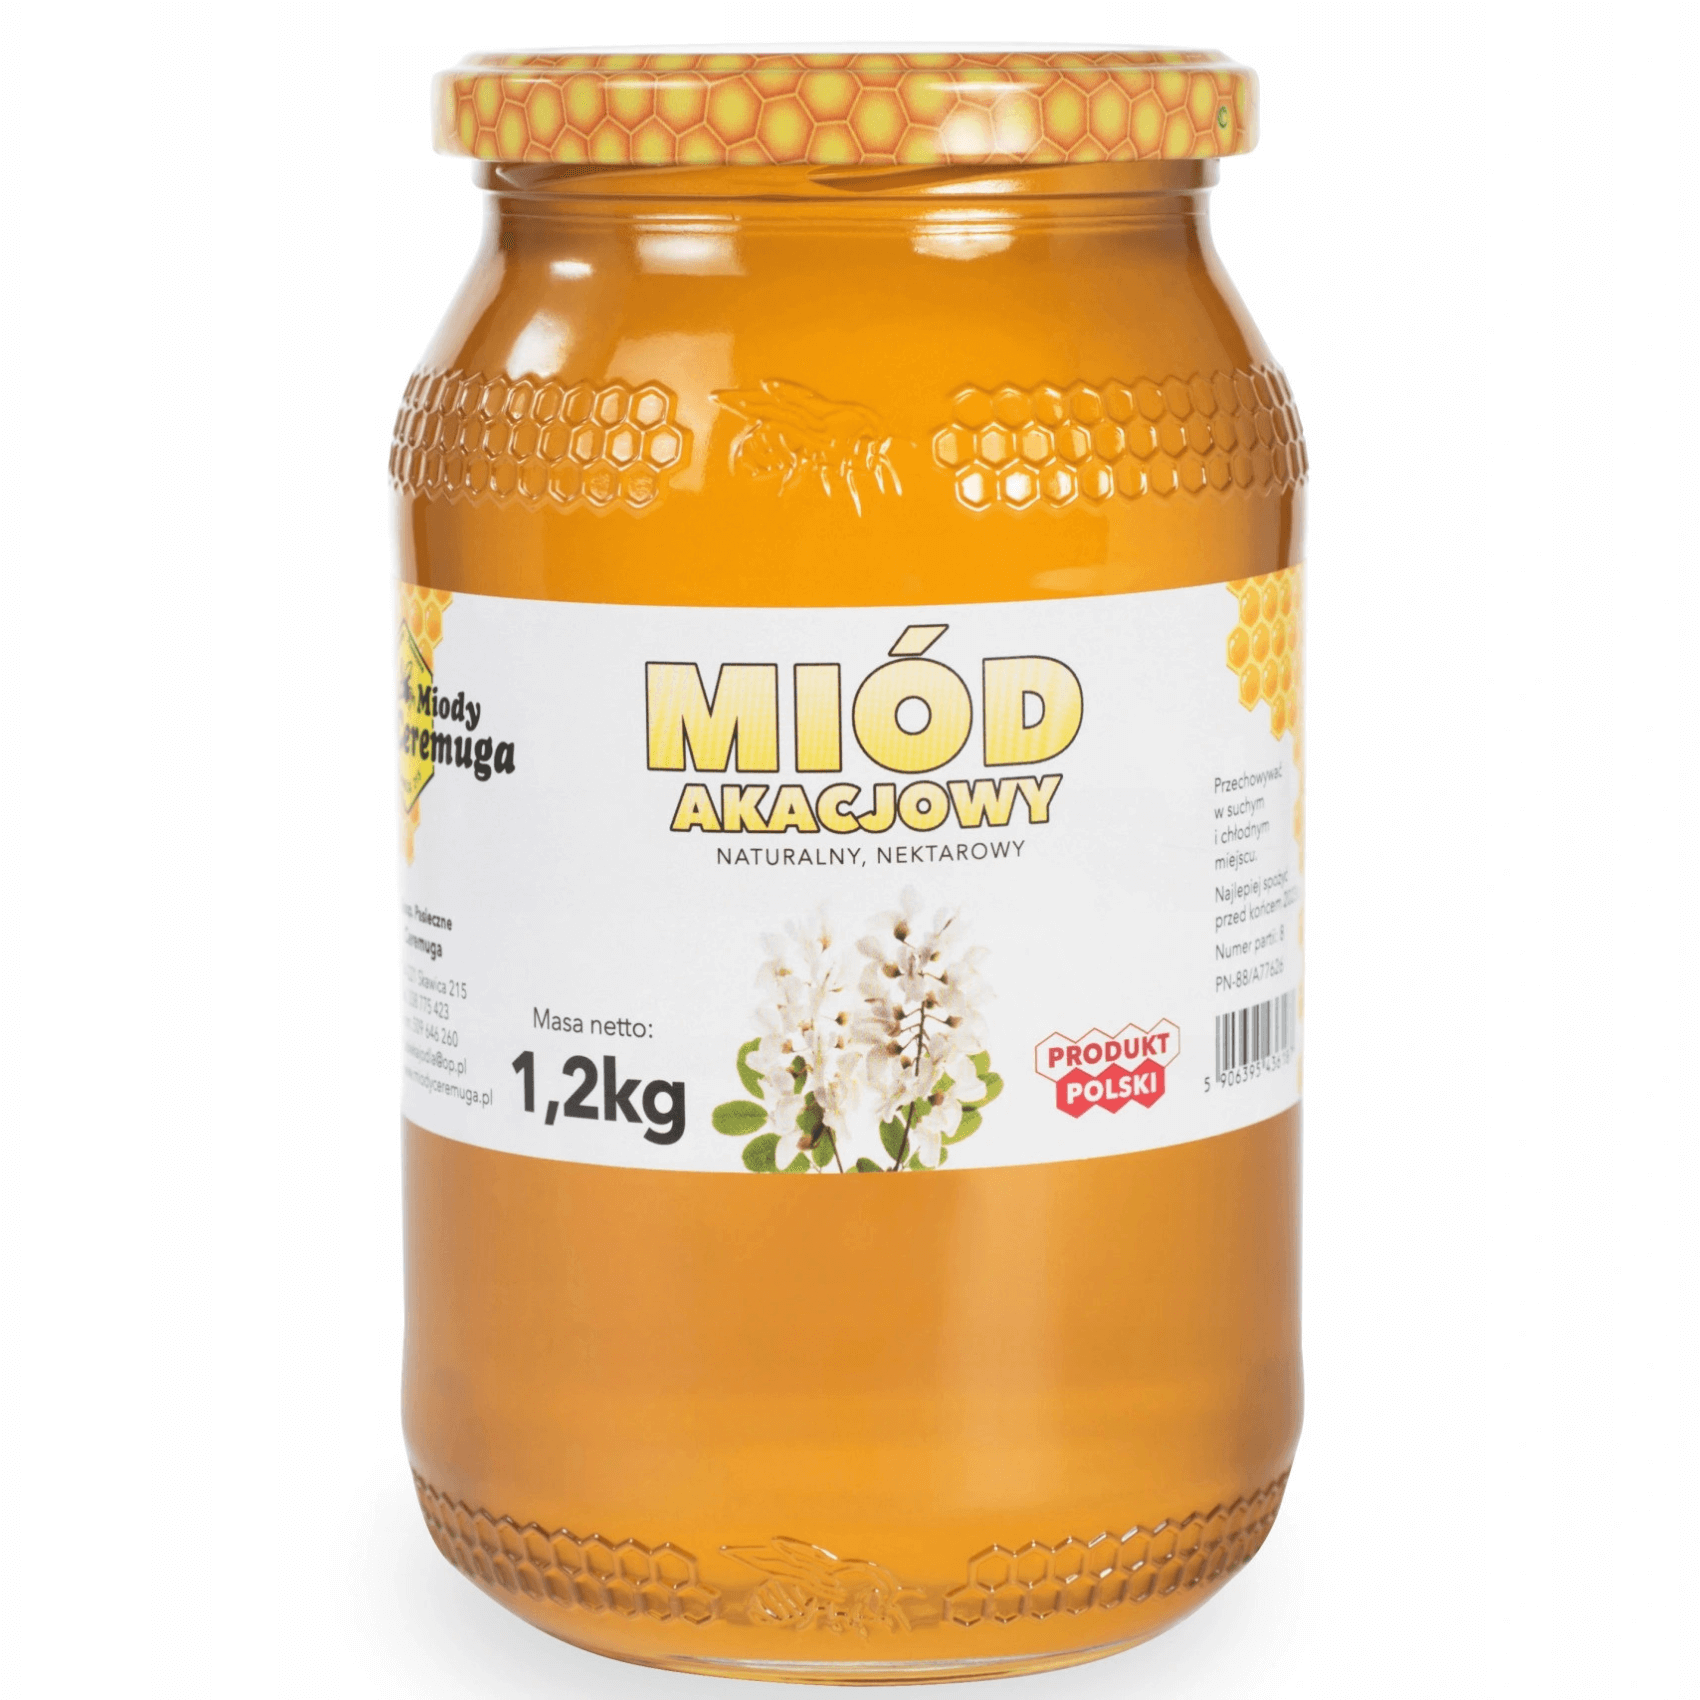 Miód akacjowy 1,2 kg - Miody Ceremuga